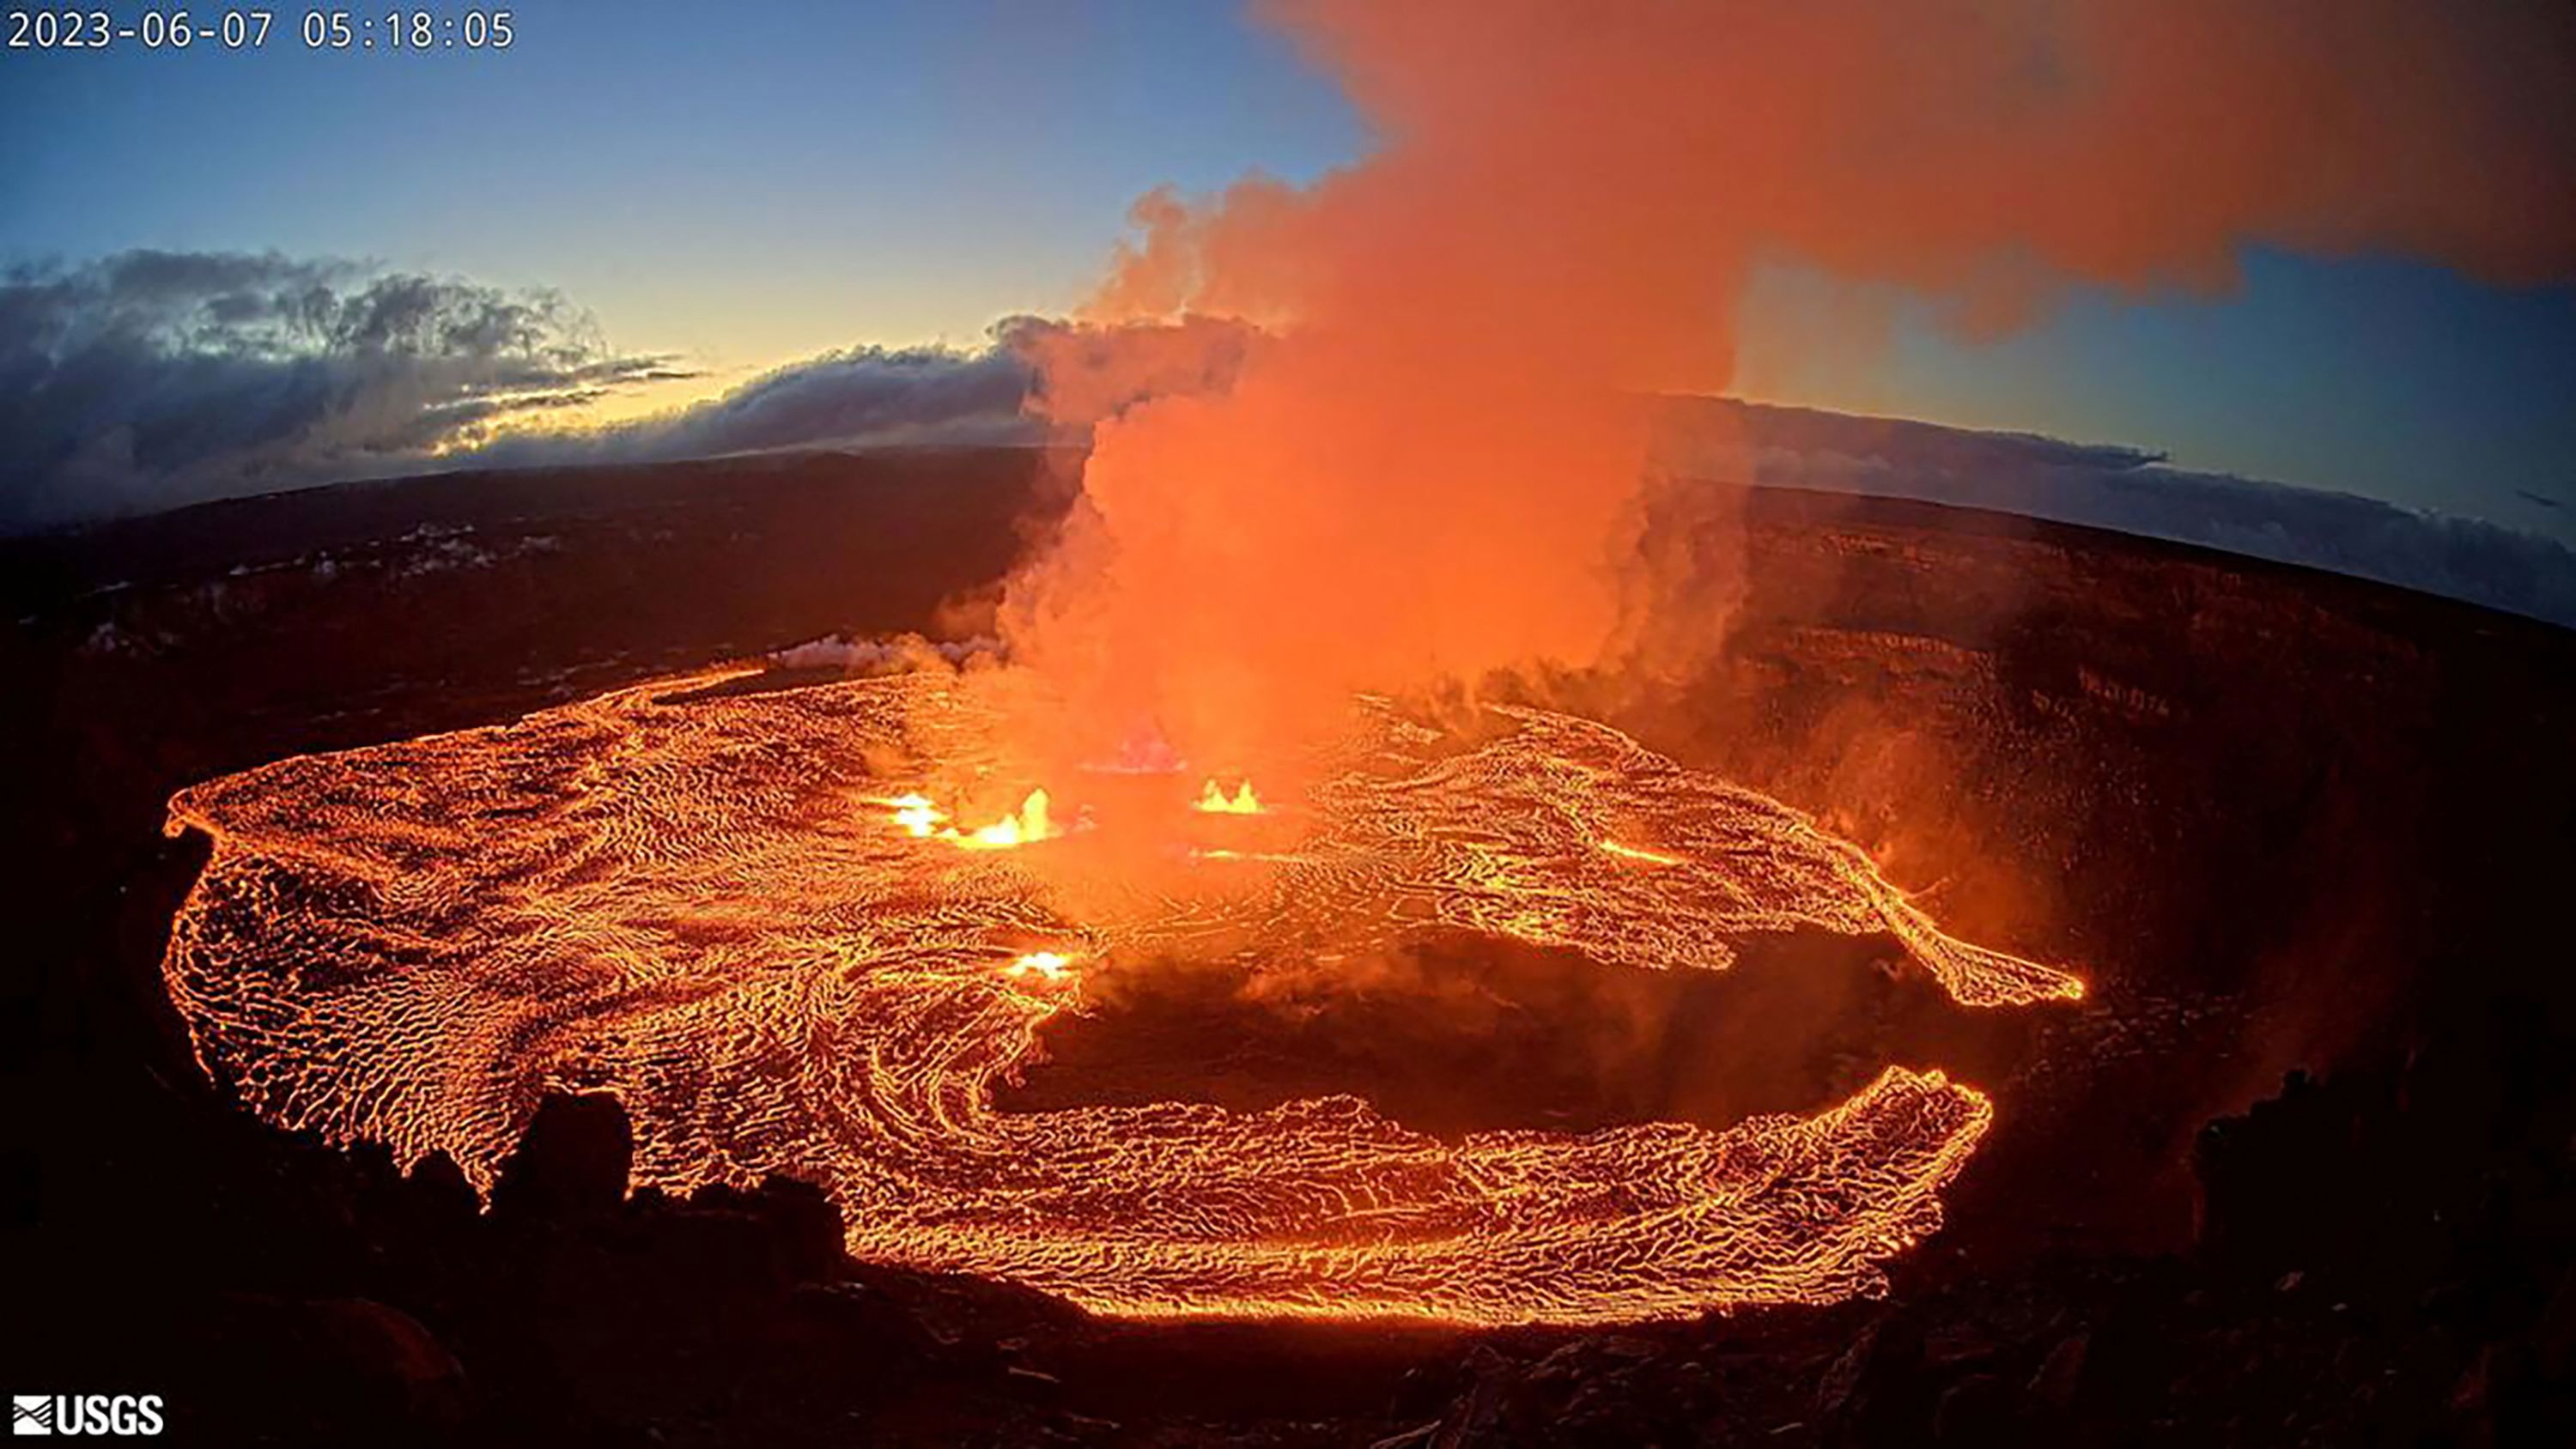 El volcán Kilauea de Hawái entra en erupción